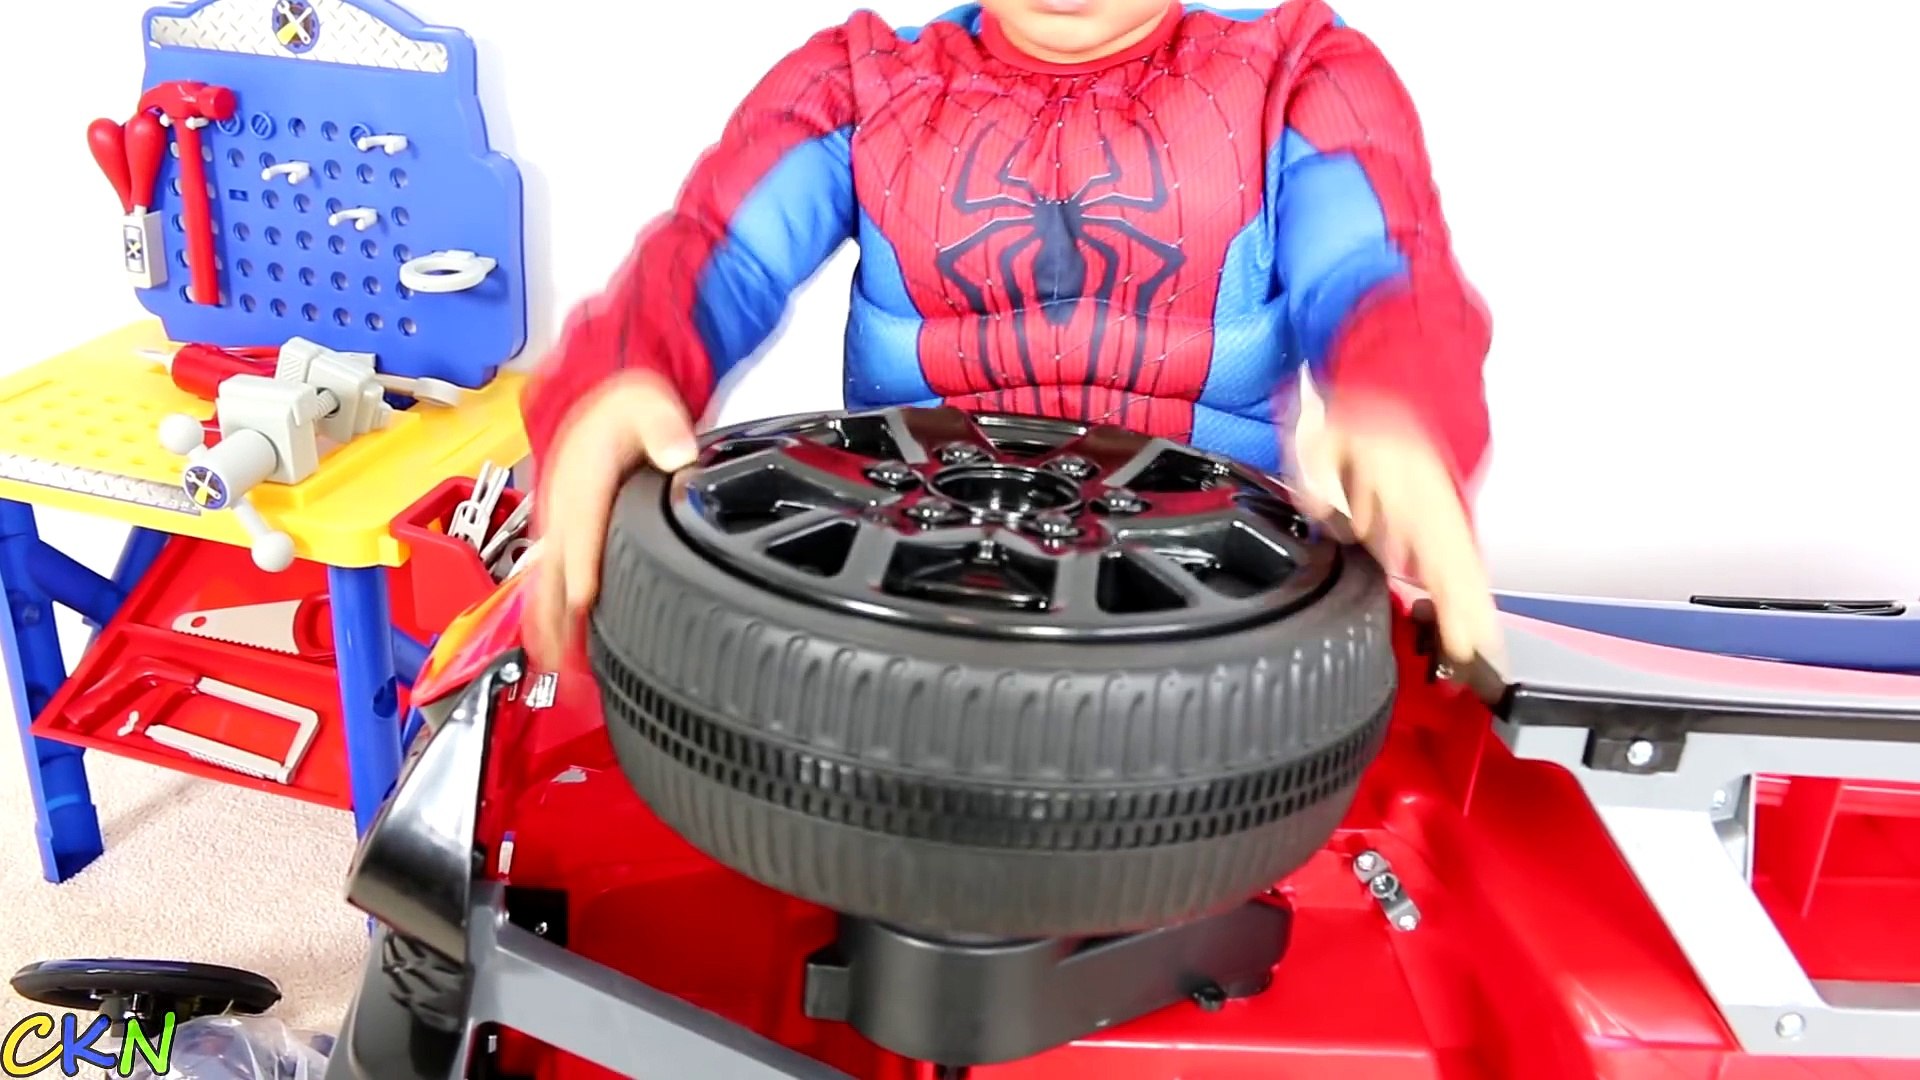 Spiderman Voiture Super électrique Pour Enfant de 6 V, Spiderman Voiture  Jouet, Voiture Jouet – Видео Dailymotion